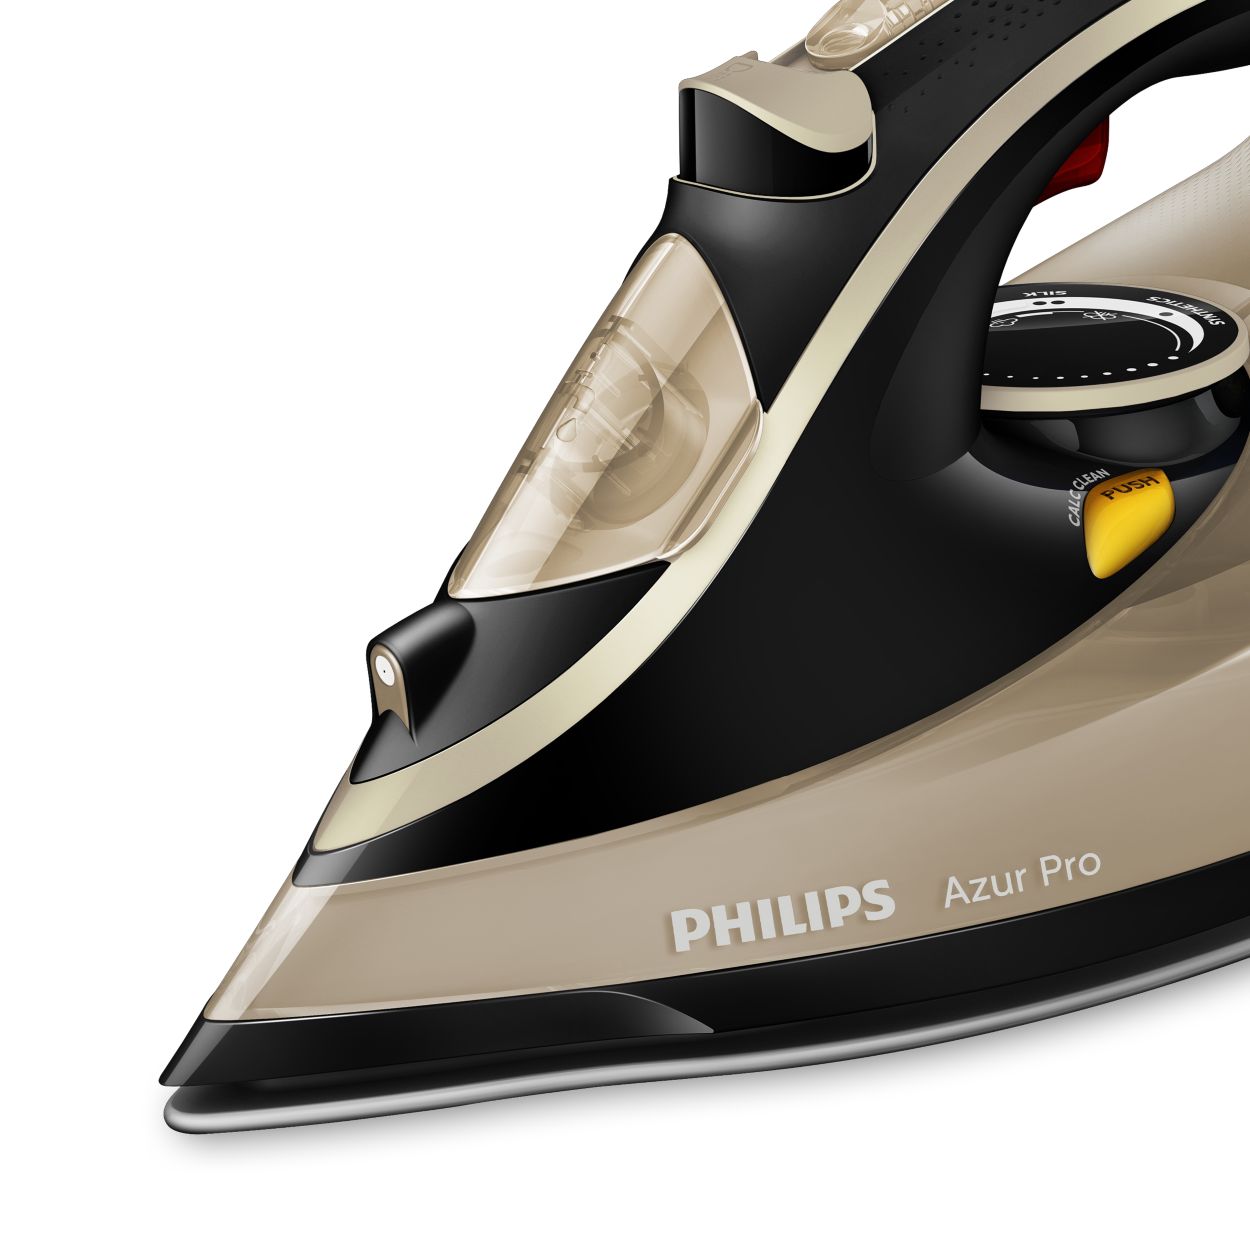 Москва филипс утюги. Утюг Philips Azur Pro 3000w. Philips gc4887/30 Azur Pro. Утюг Филипс Азур. Утюг Филипс Azur Pro 4885.